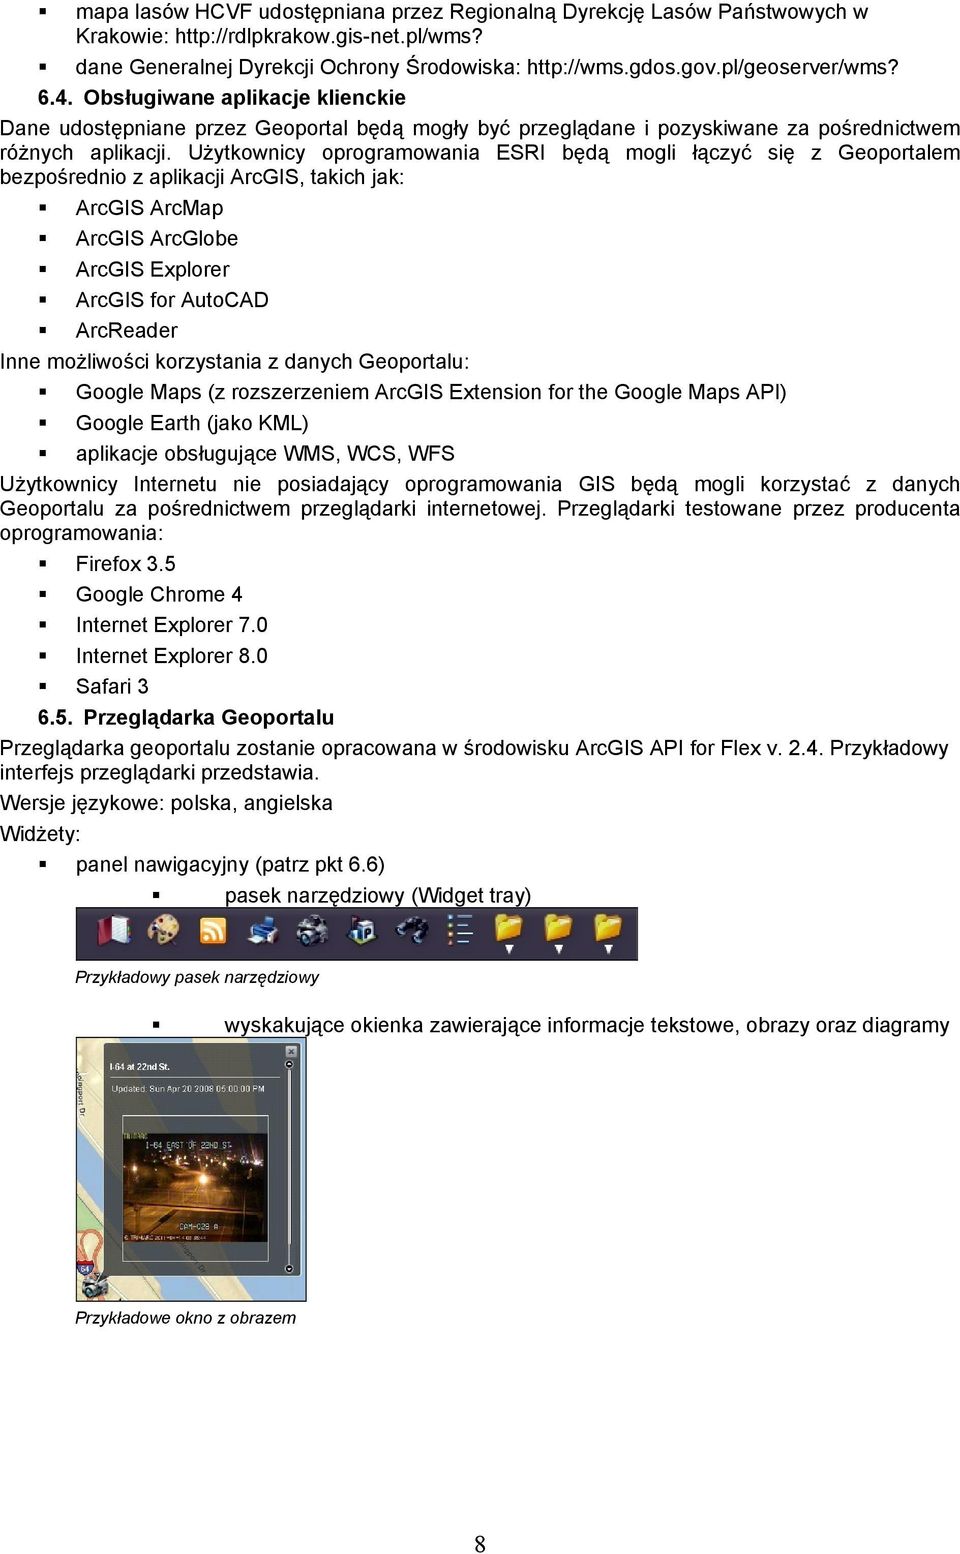 Użytkownicy oprogramowania ESRI będą mogli łączyć się z Geoportalem bezpośrednio z aplikacji ArcGIS, takich jak: ArcGIS ArcMap ArcGIS ArcGlobe ArcGIS Explorer ArcGIS for AutoCAD ArcReader Inne